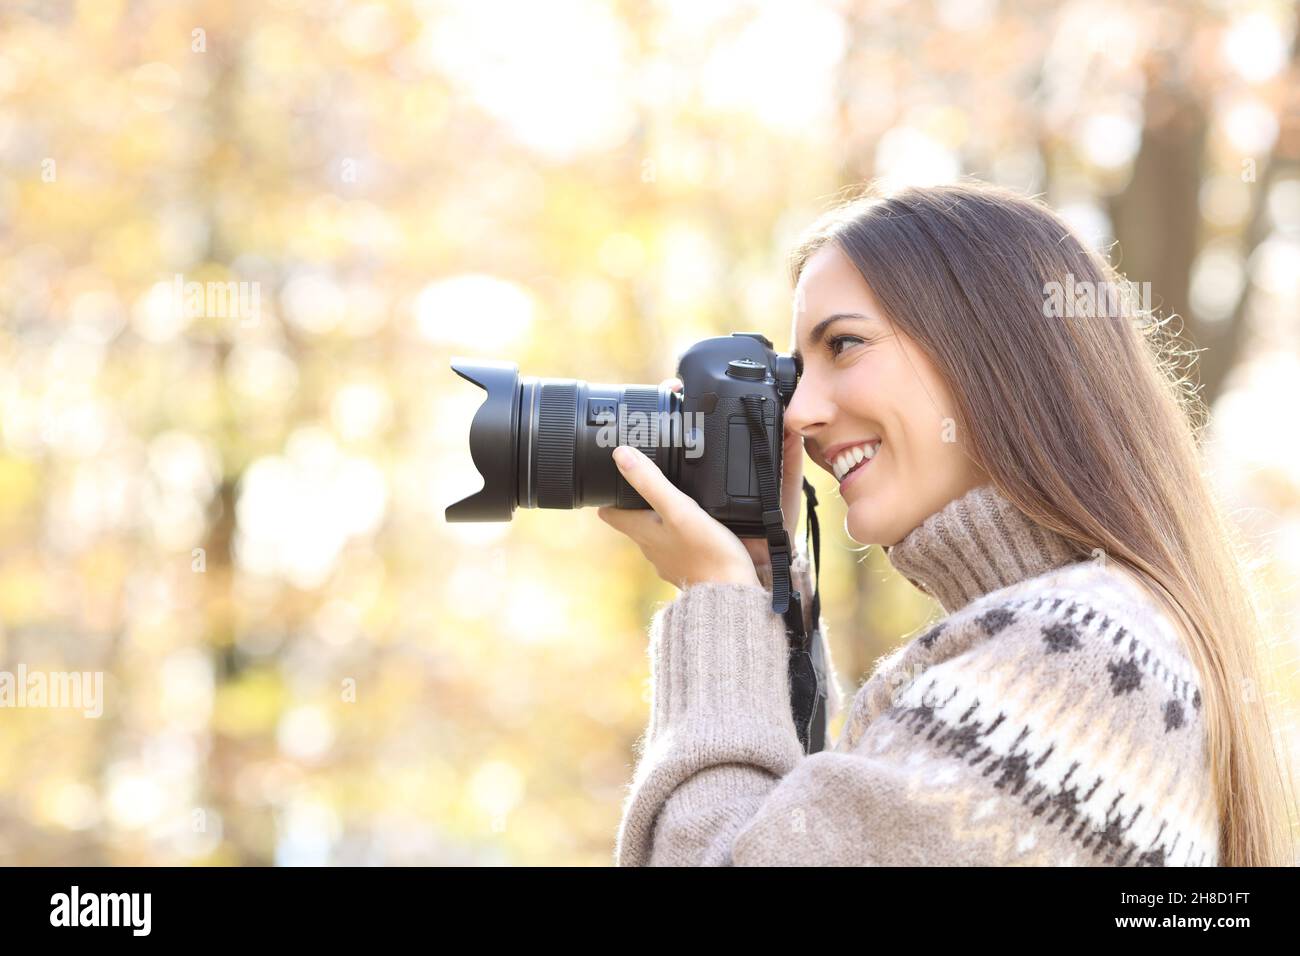 Chica con cámara en sus manos tomando fotos fotografías e imágenes de alta  resolución - Alamy